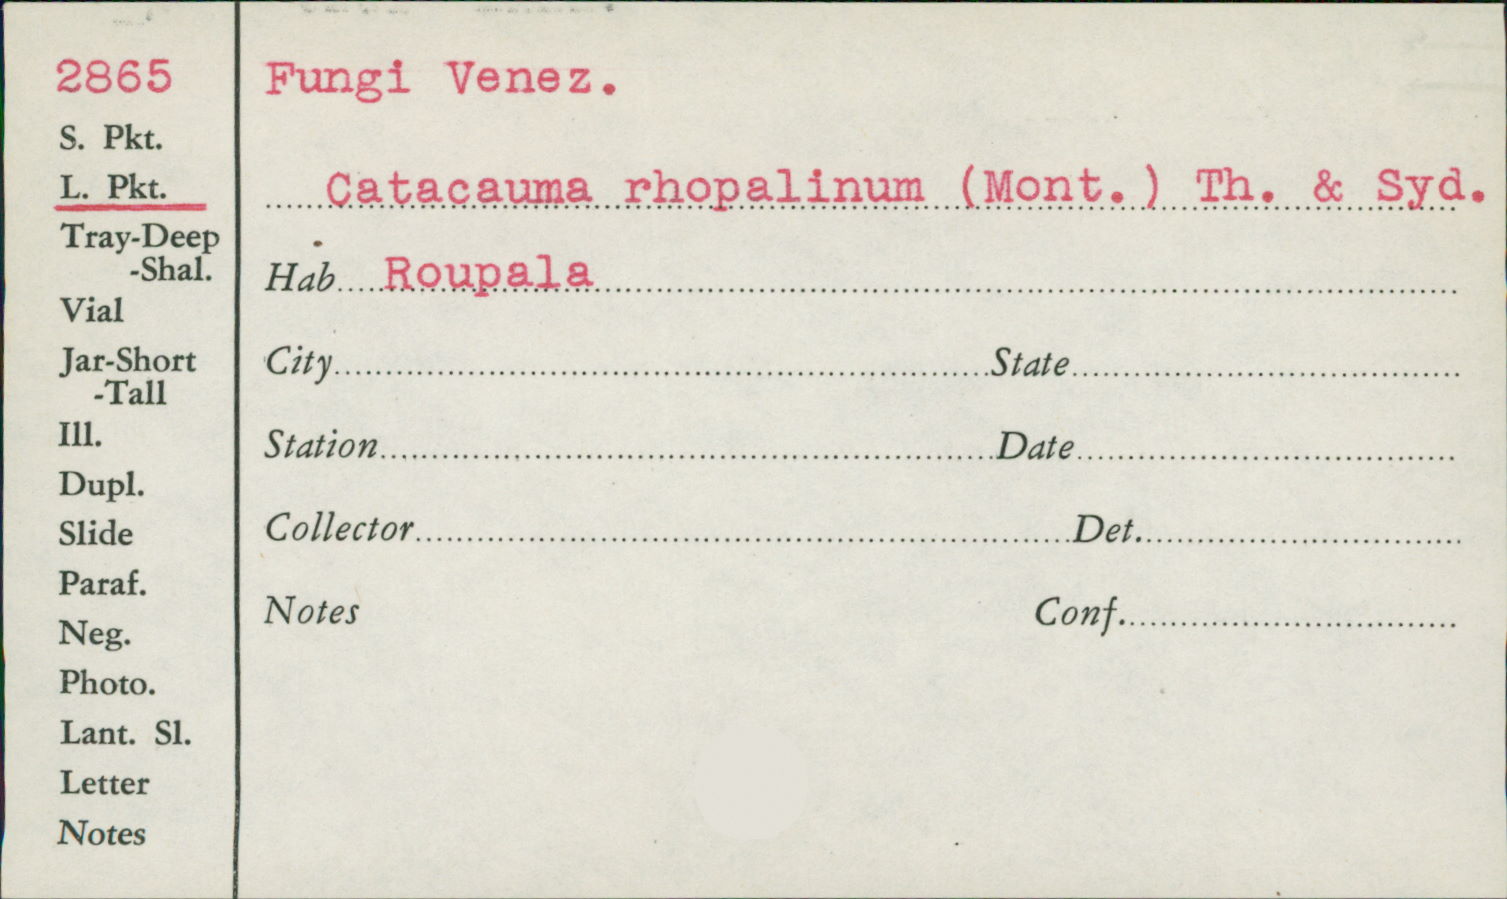 Catacauma roupalinum image